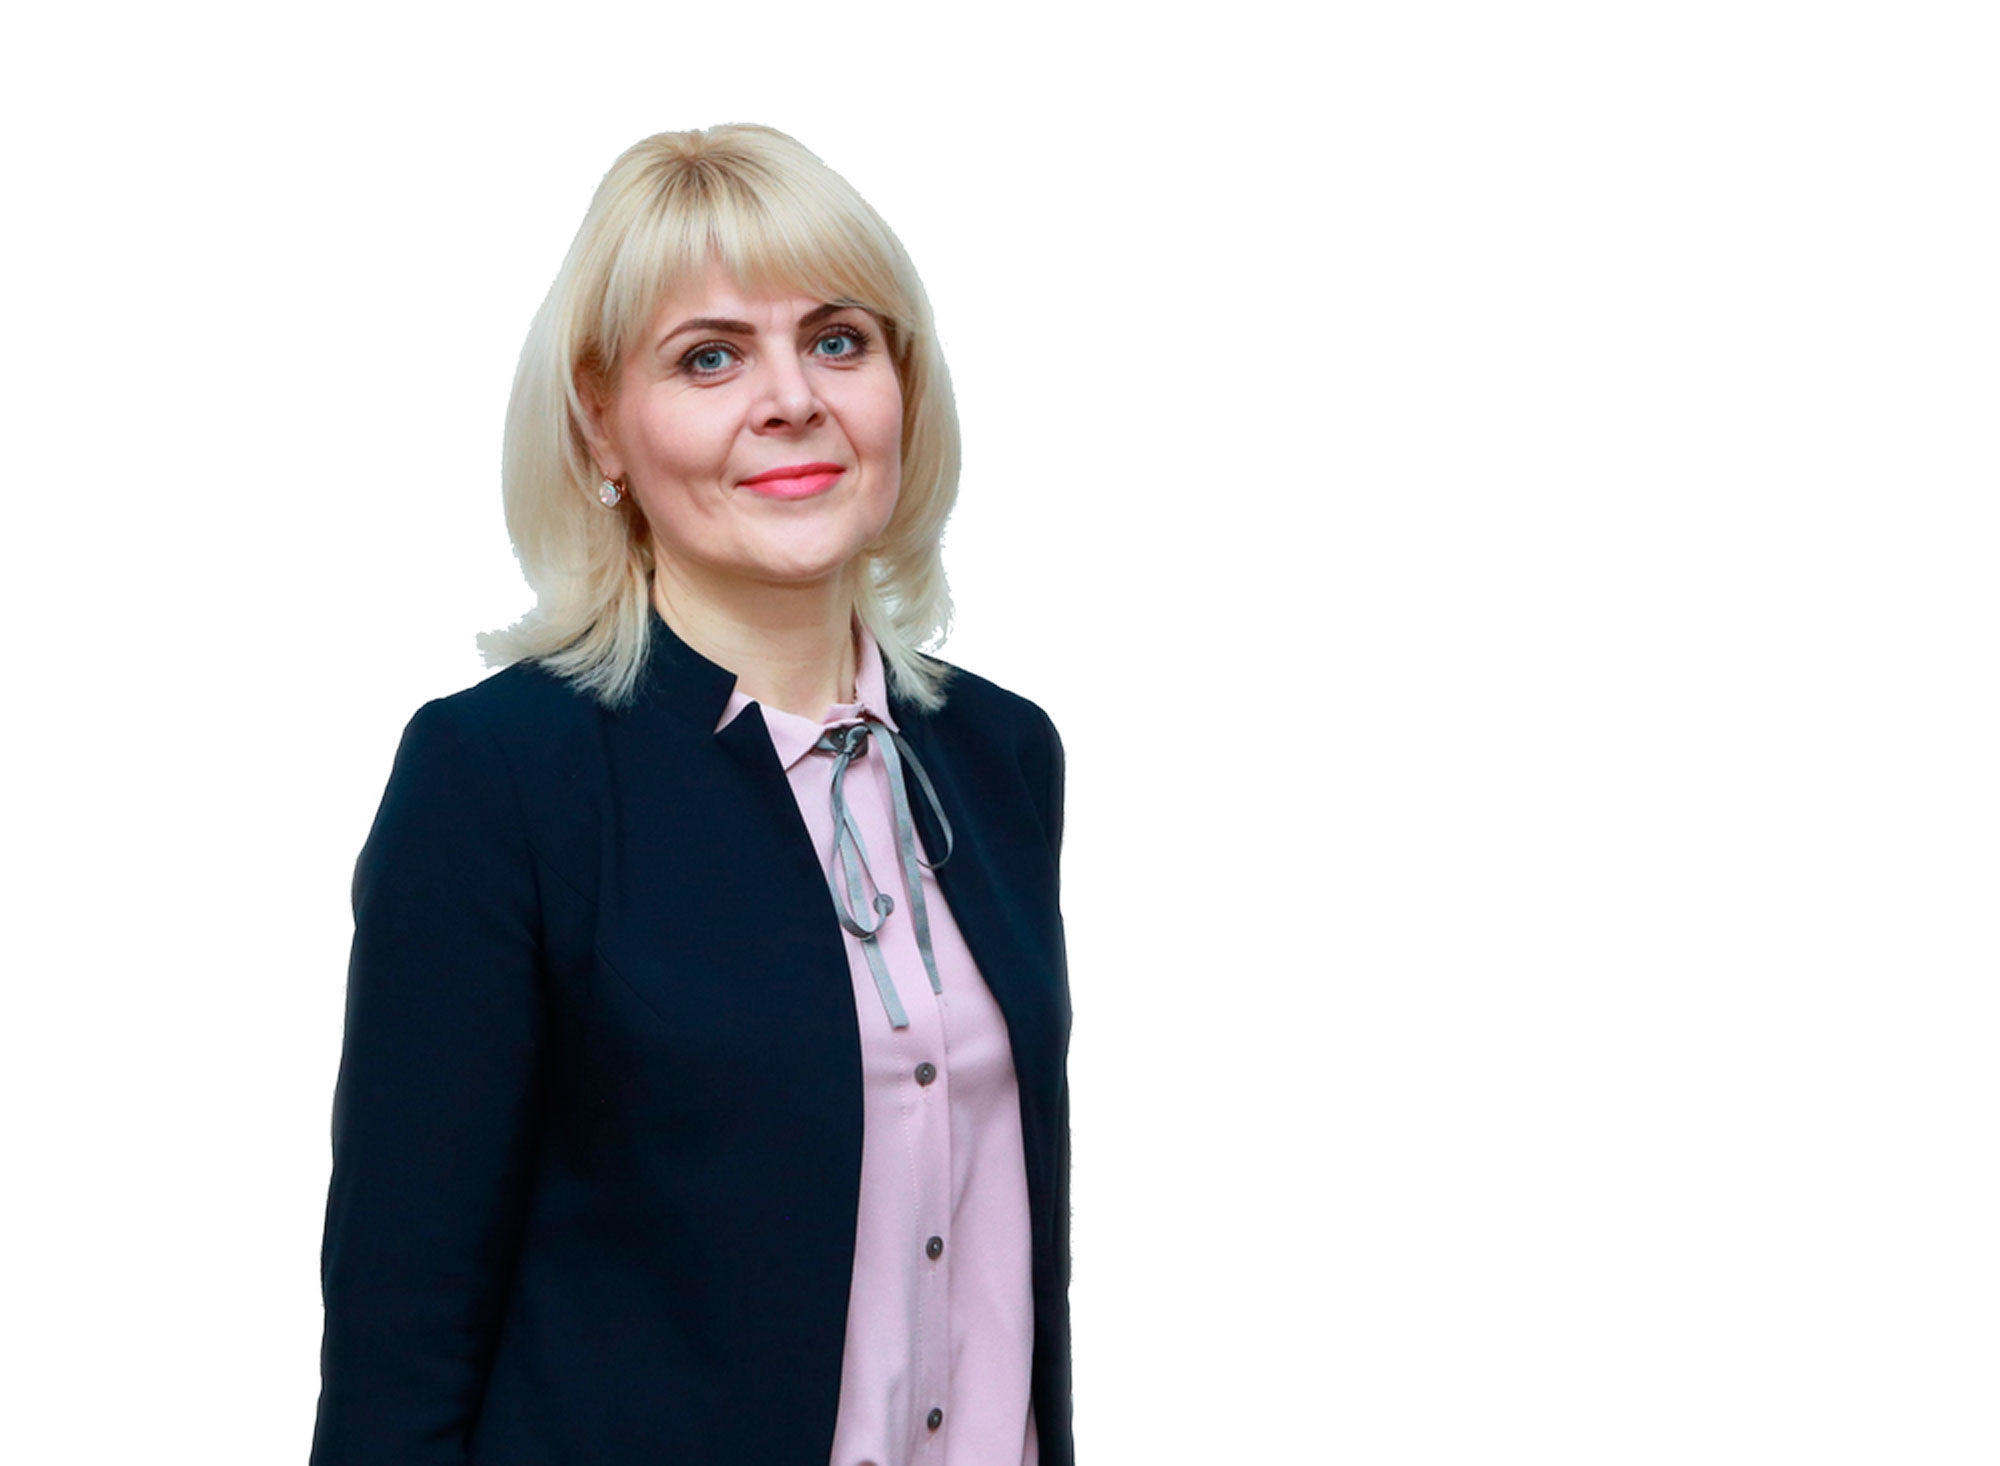 Наталья ТИМОНОВА, председатель районного объединения профсоюзов: Будущее страны определять нам самим